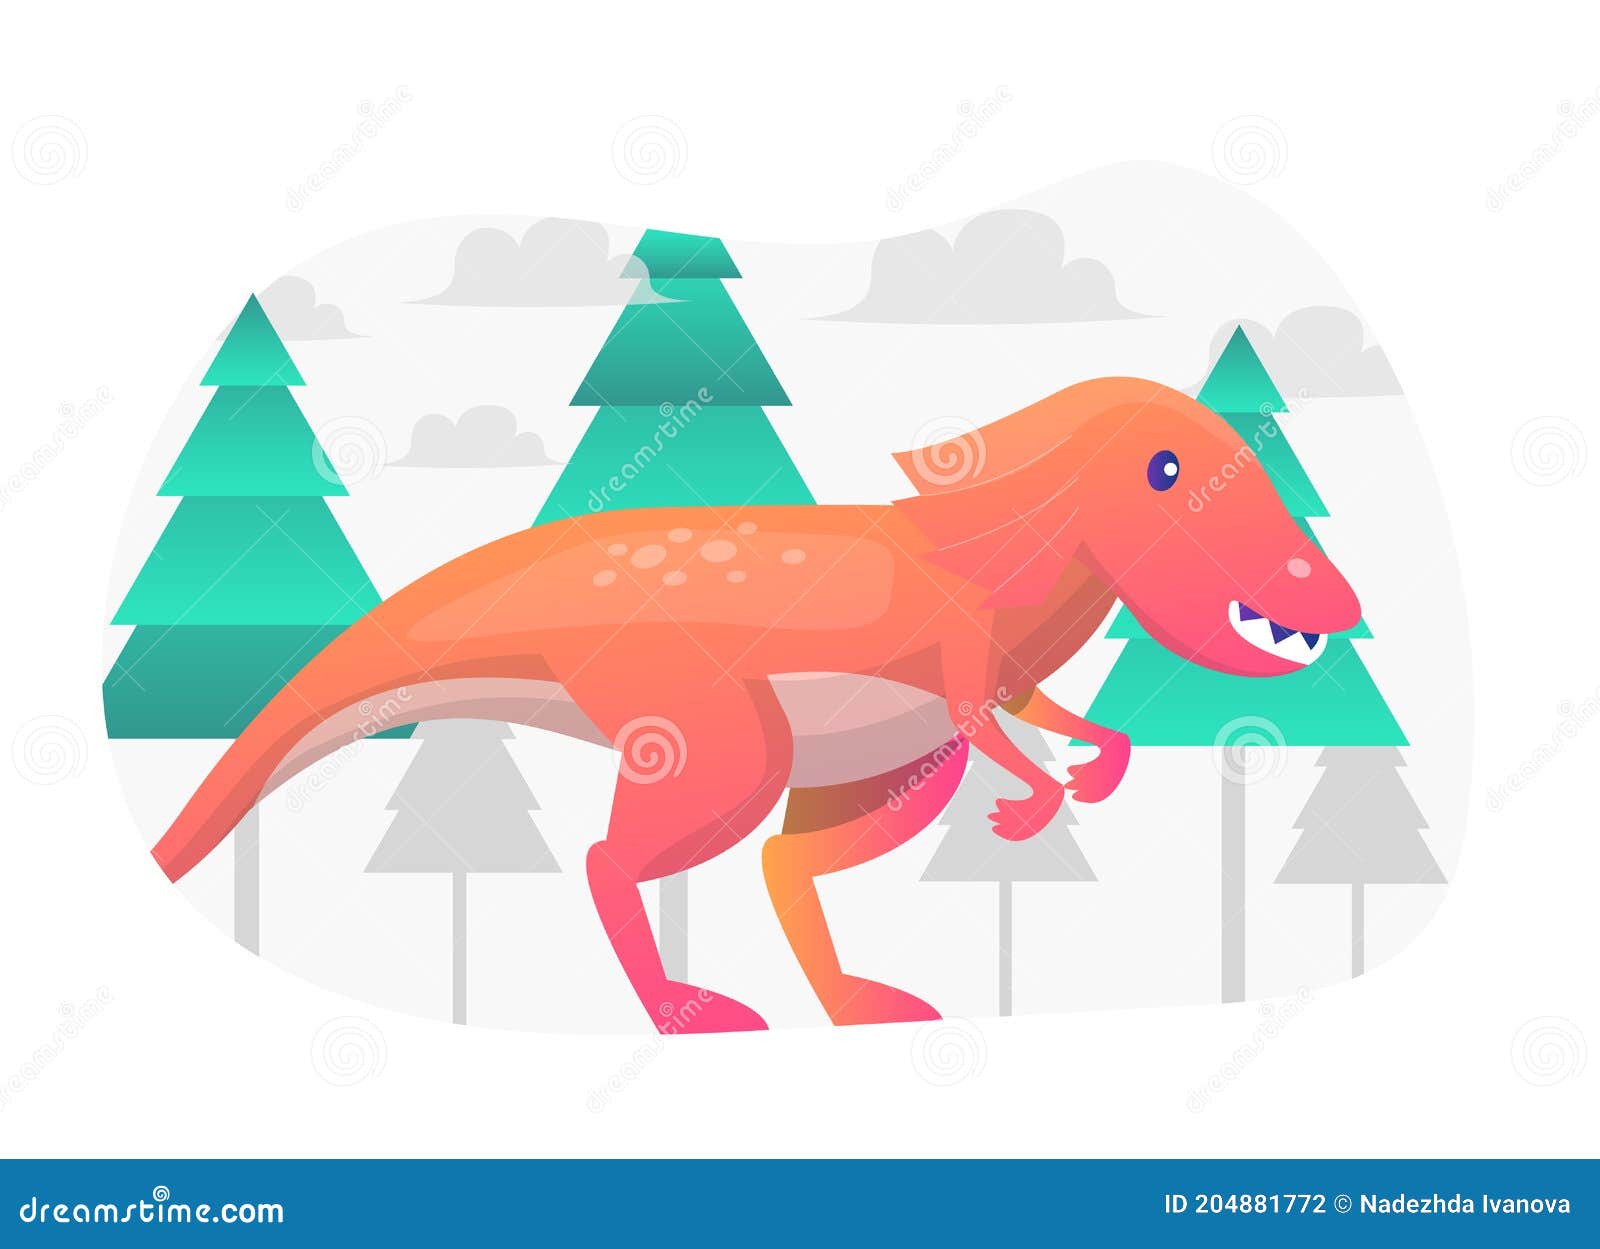 dinousaur concept flat   graphic.